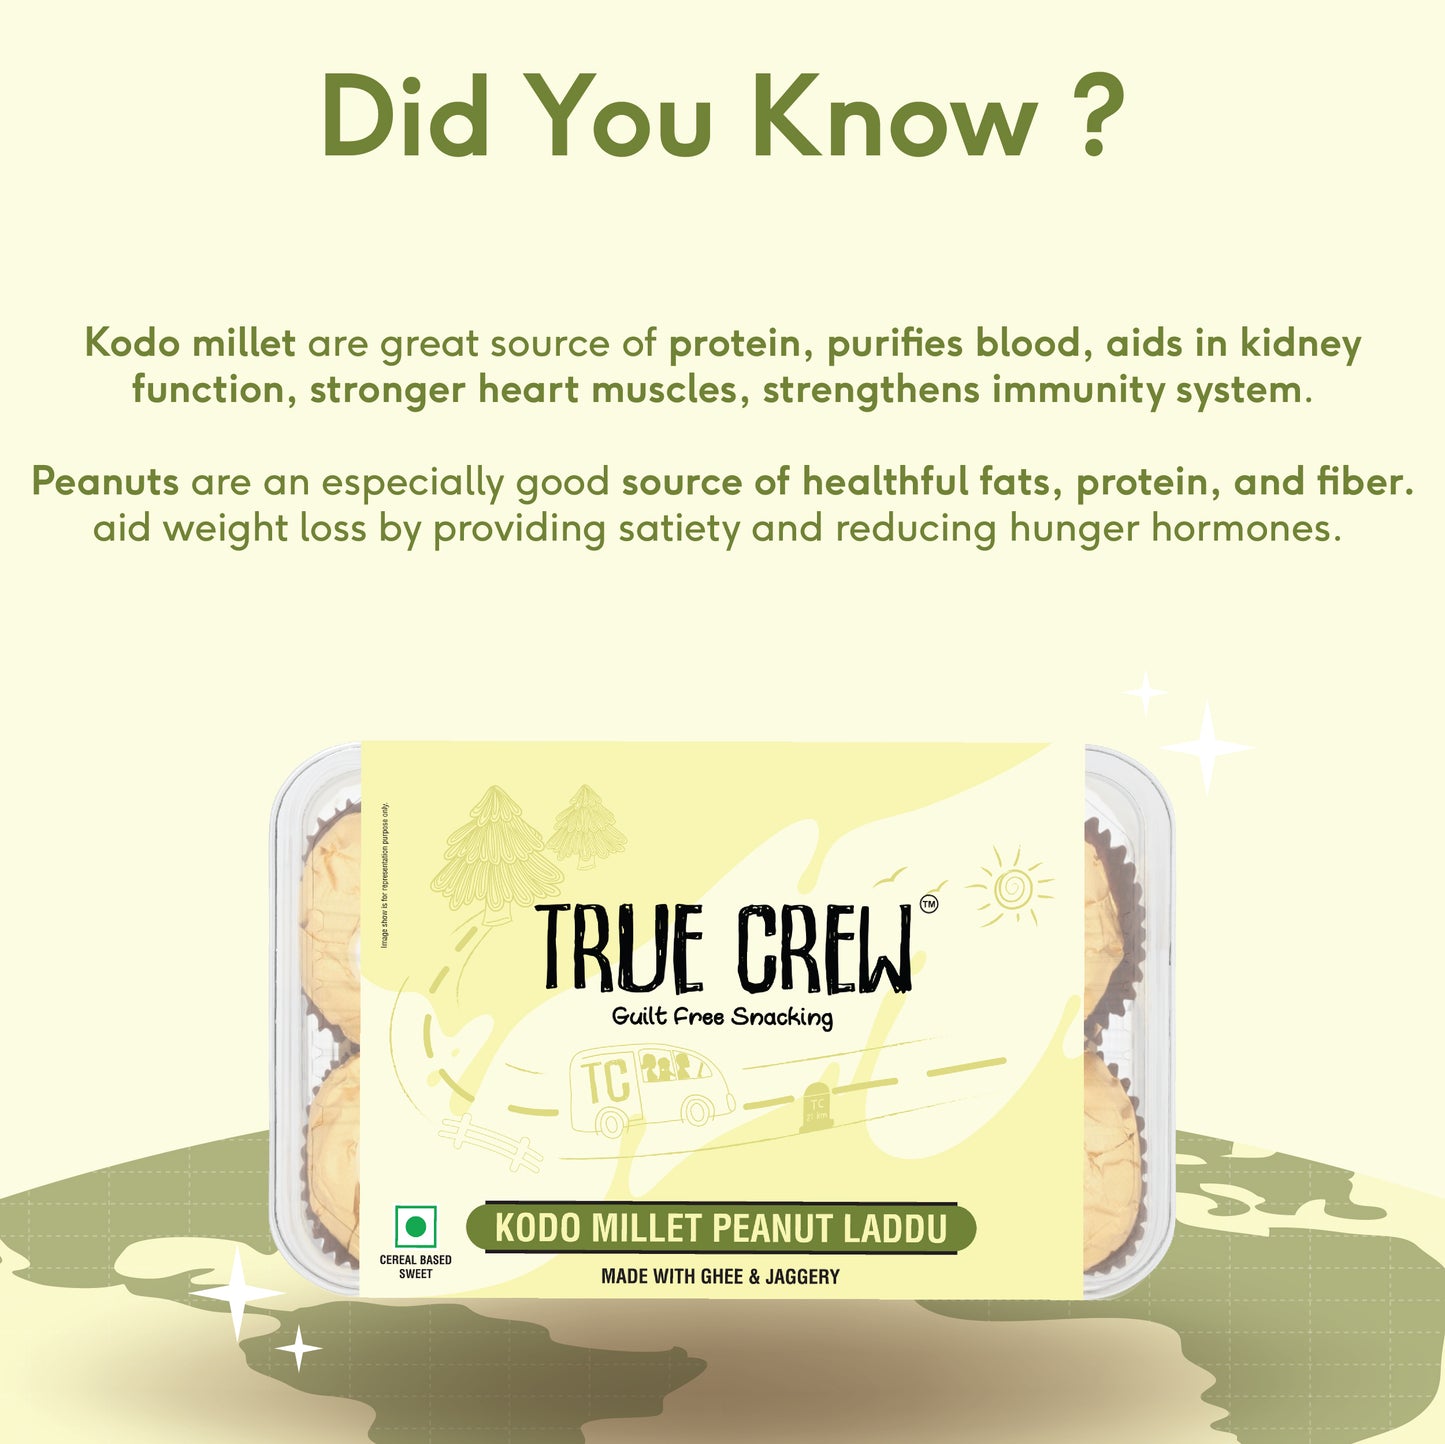 TRUE CREW - Kodo Millet Peanut Laddu, 180 g